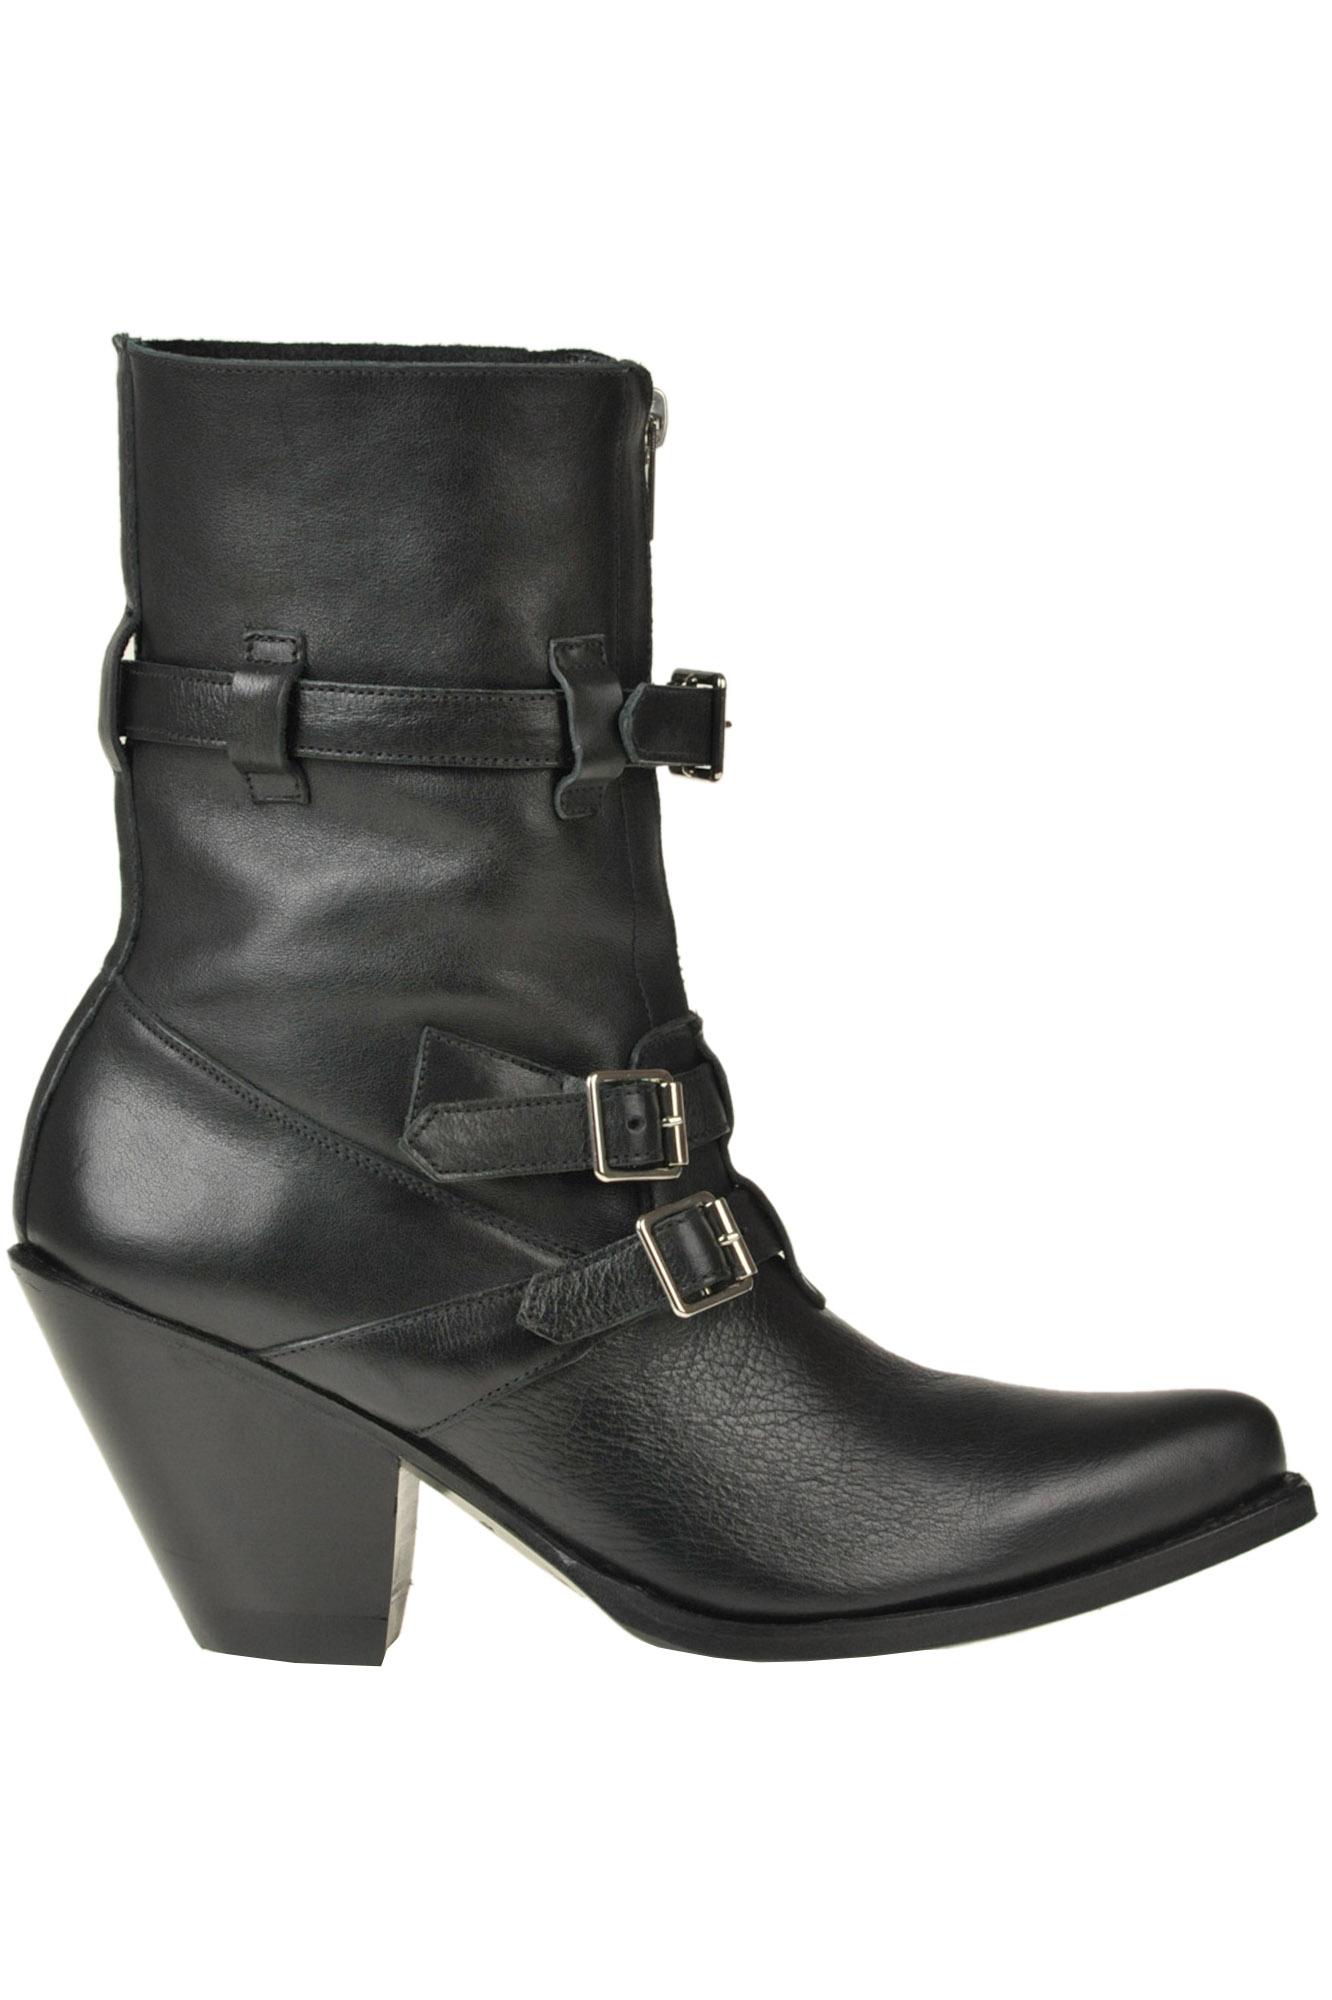 Celine Leather Berlin Texan Boots in Black - Lyst